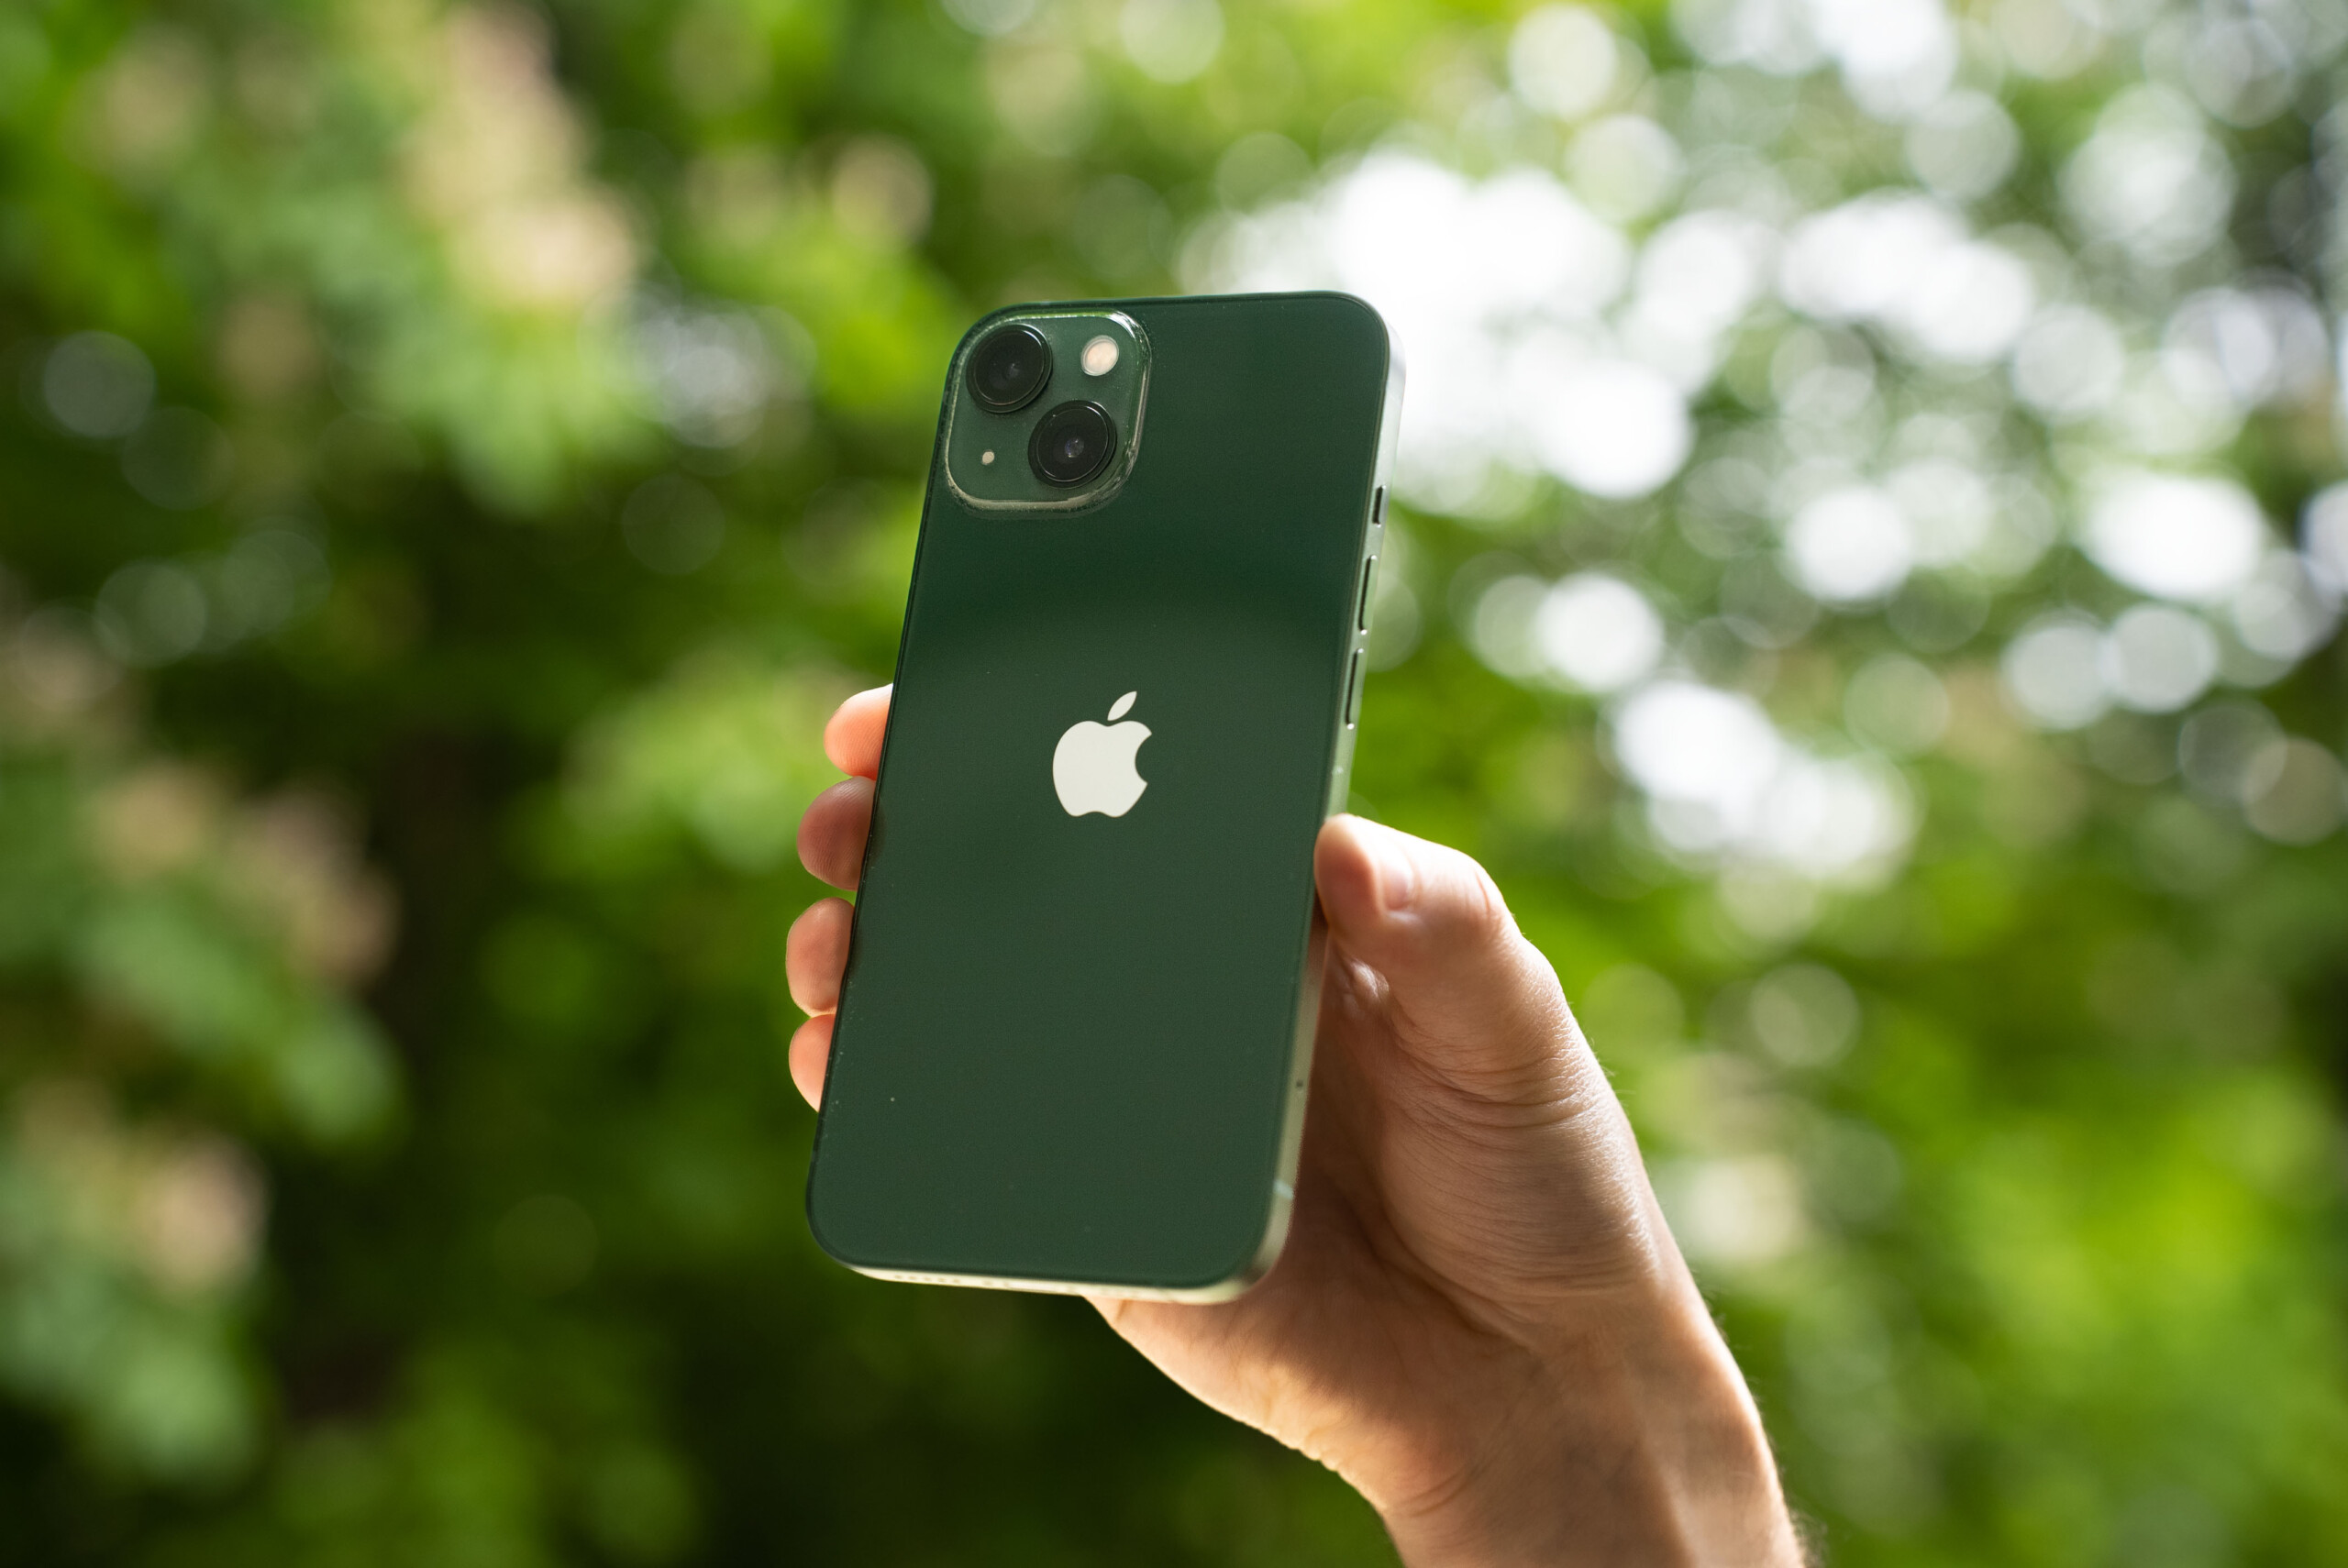 S'offrir un smartphone en achetant un iPhone 11 reconditionné